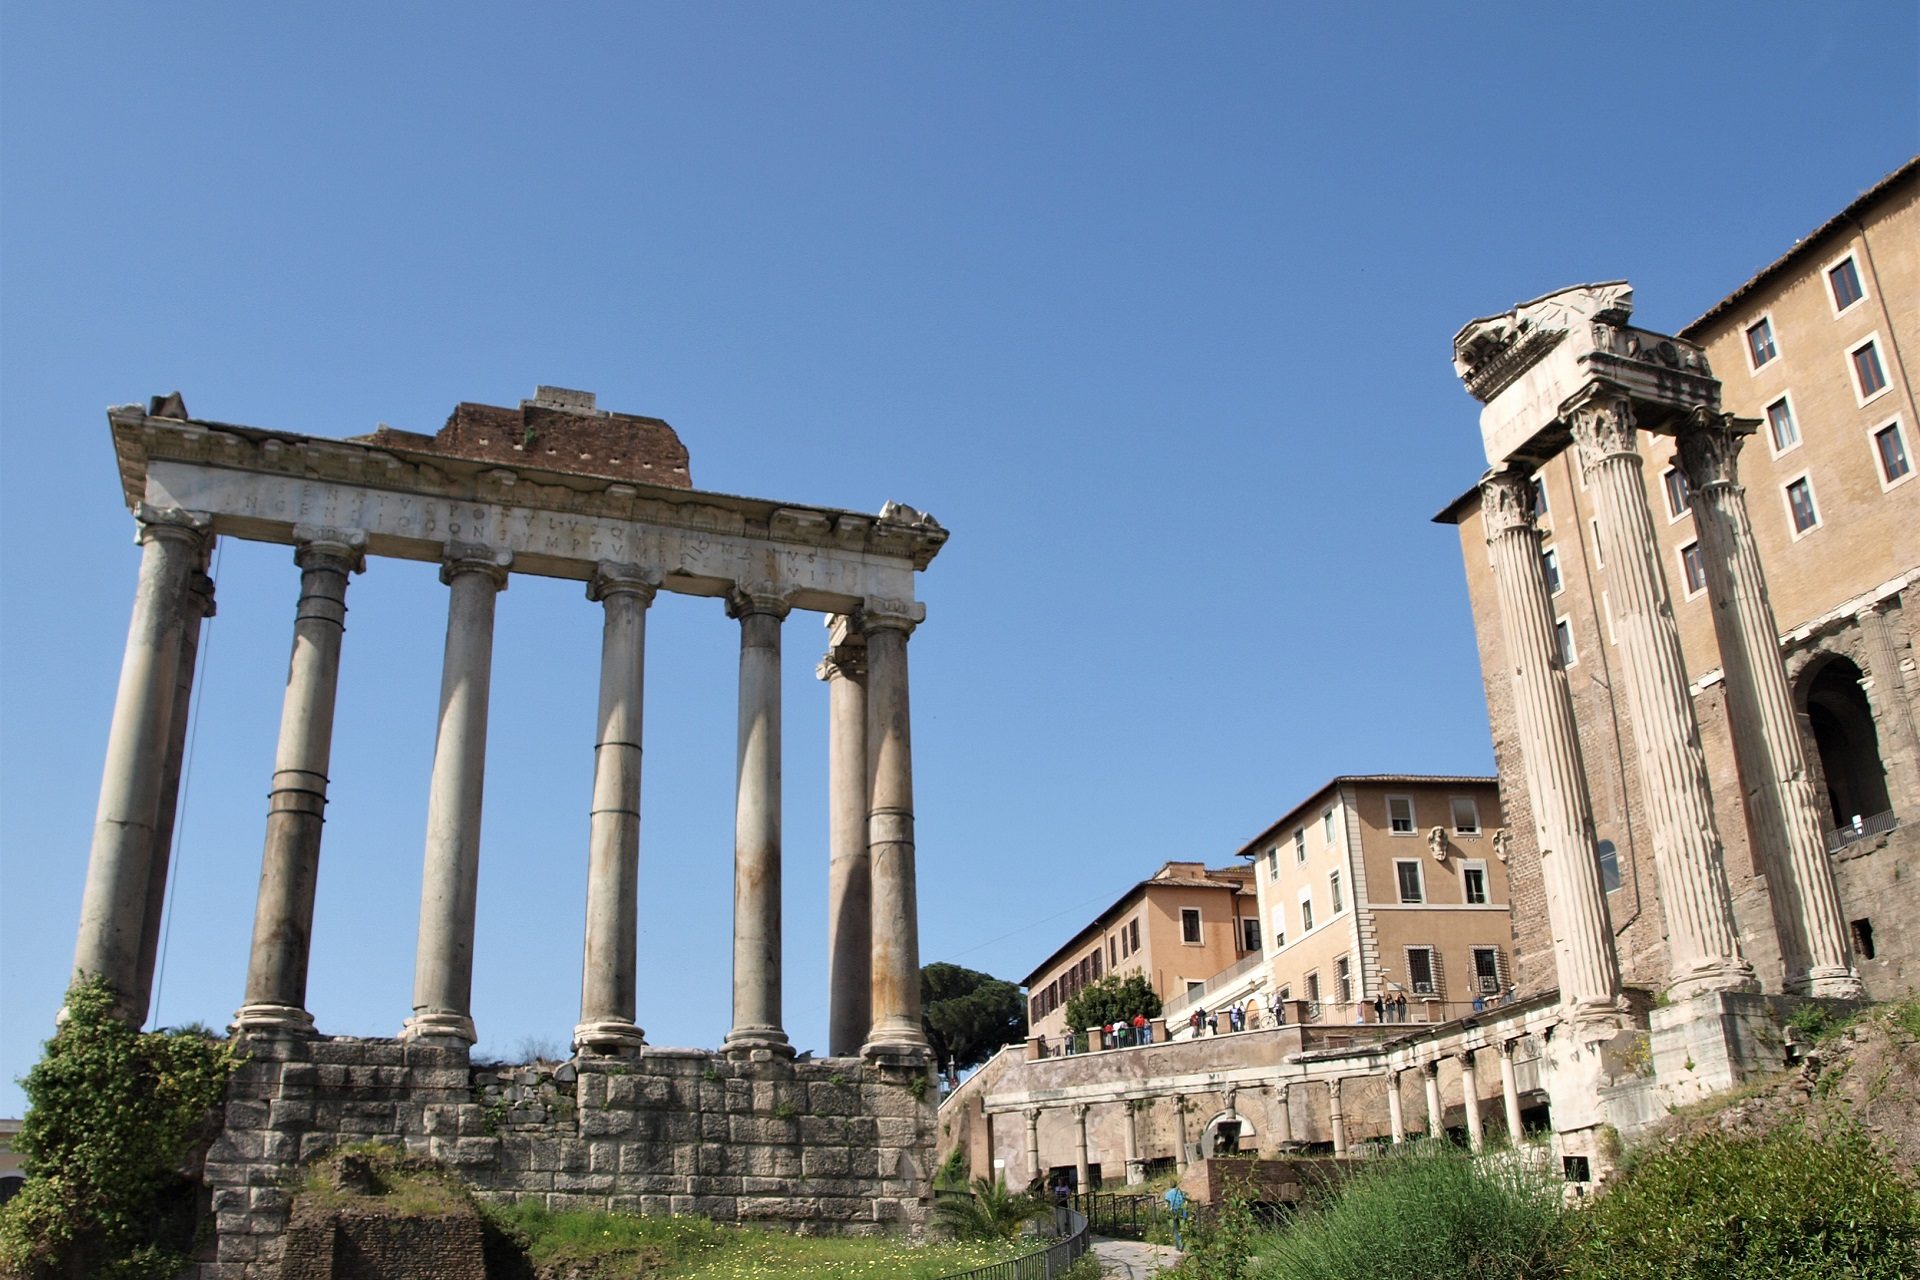 Pozostałosci po jednej ze światyń na Forum Romanum w Rzymie